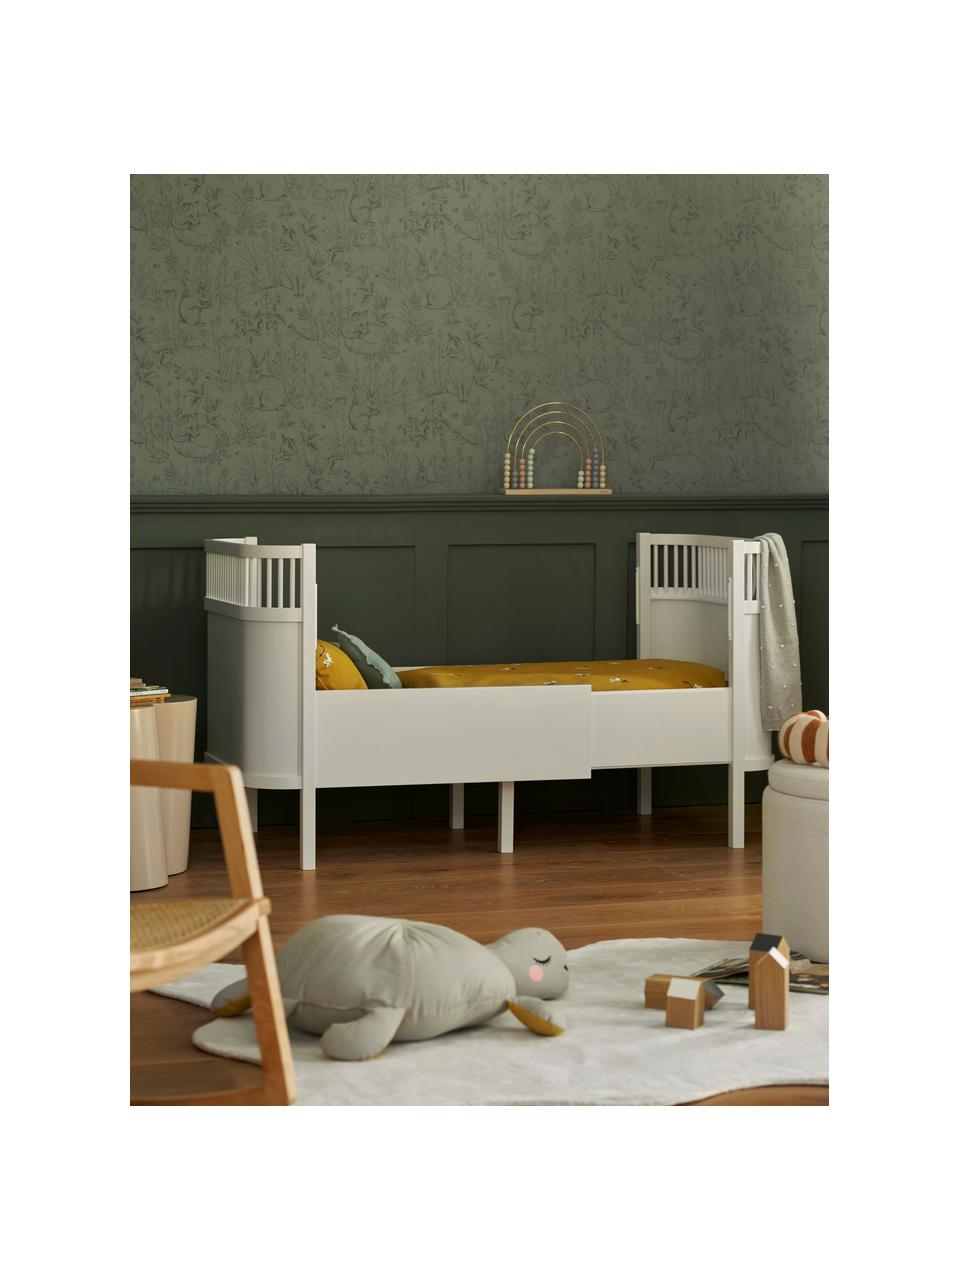 Łóżko dziecięce z drewna Junior Grow, 90 x 160/200 cm, Drewno brzozowe lakierowane farbą wolną od LZO, Drewno brzozowe lakierowane na biało, S 90 x D 165/205 cm